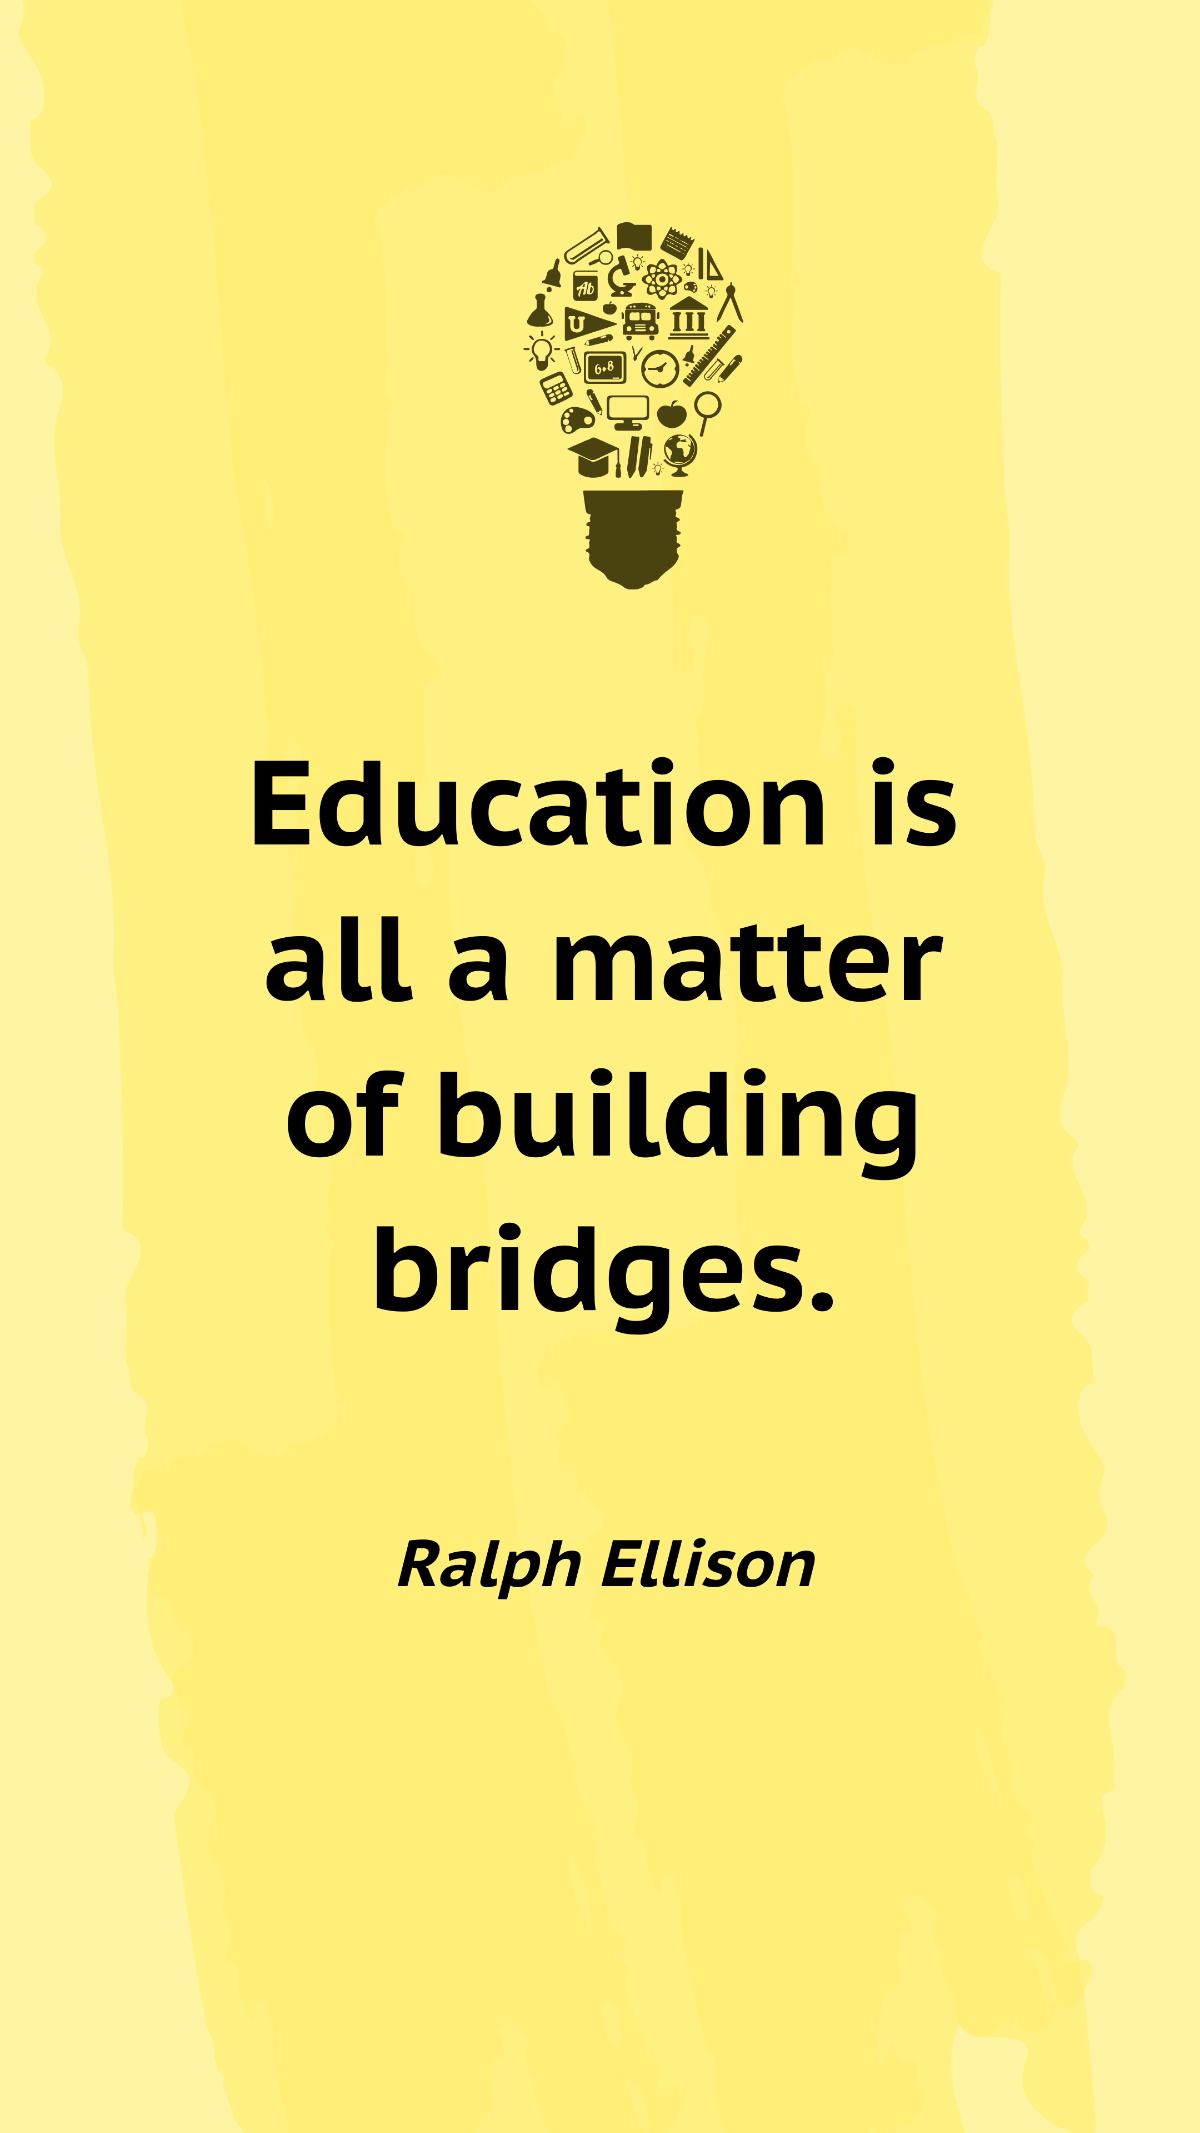 Ralph Ellison - Education is all a matter of building bridges.